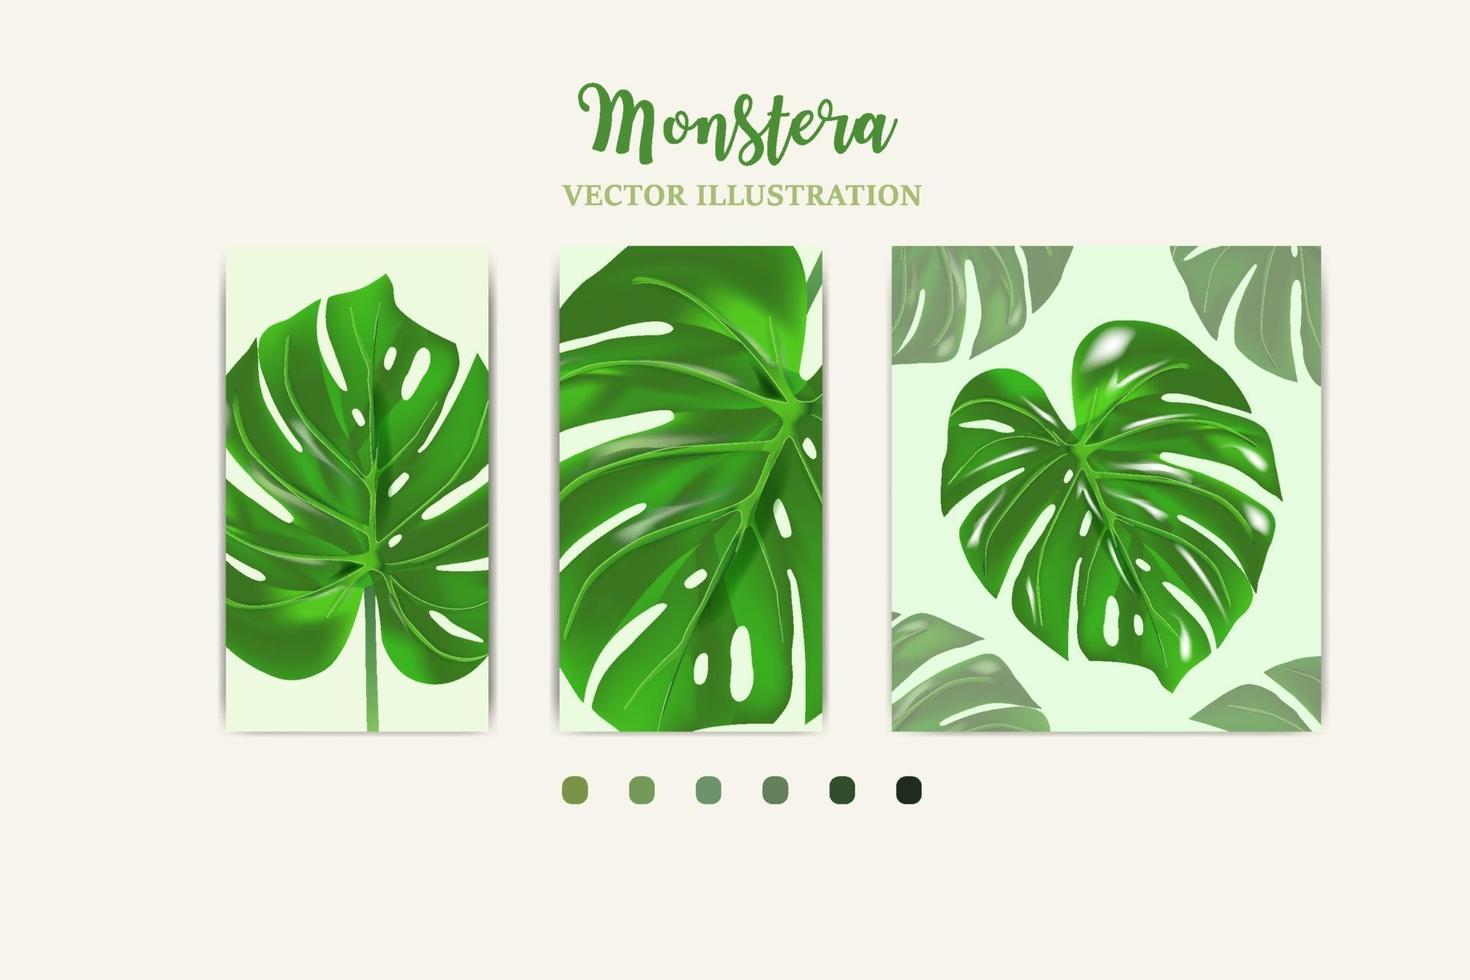 La hoja de la planta monstera de los bosques tropicales el cultivo en la imagen se puede usar para tarjetas de felicitación, volantes, invitaciones, diseño web para todo. vector